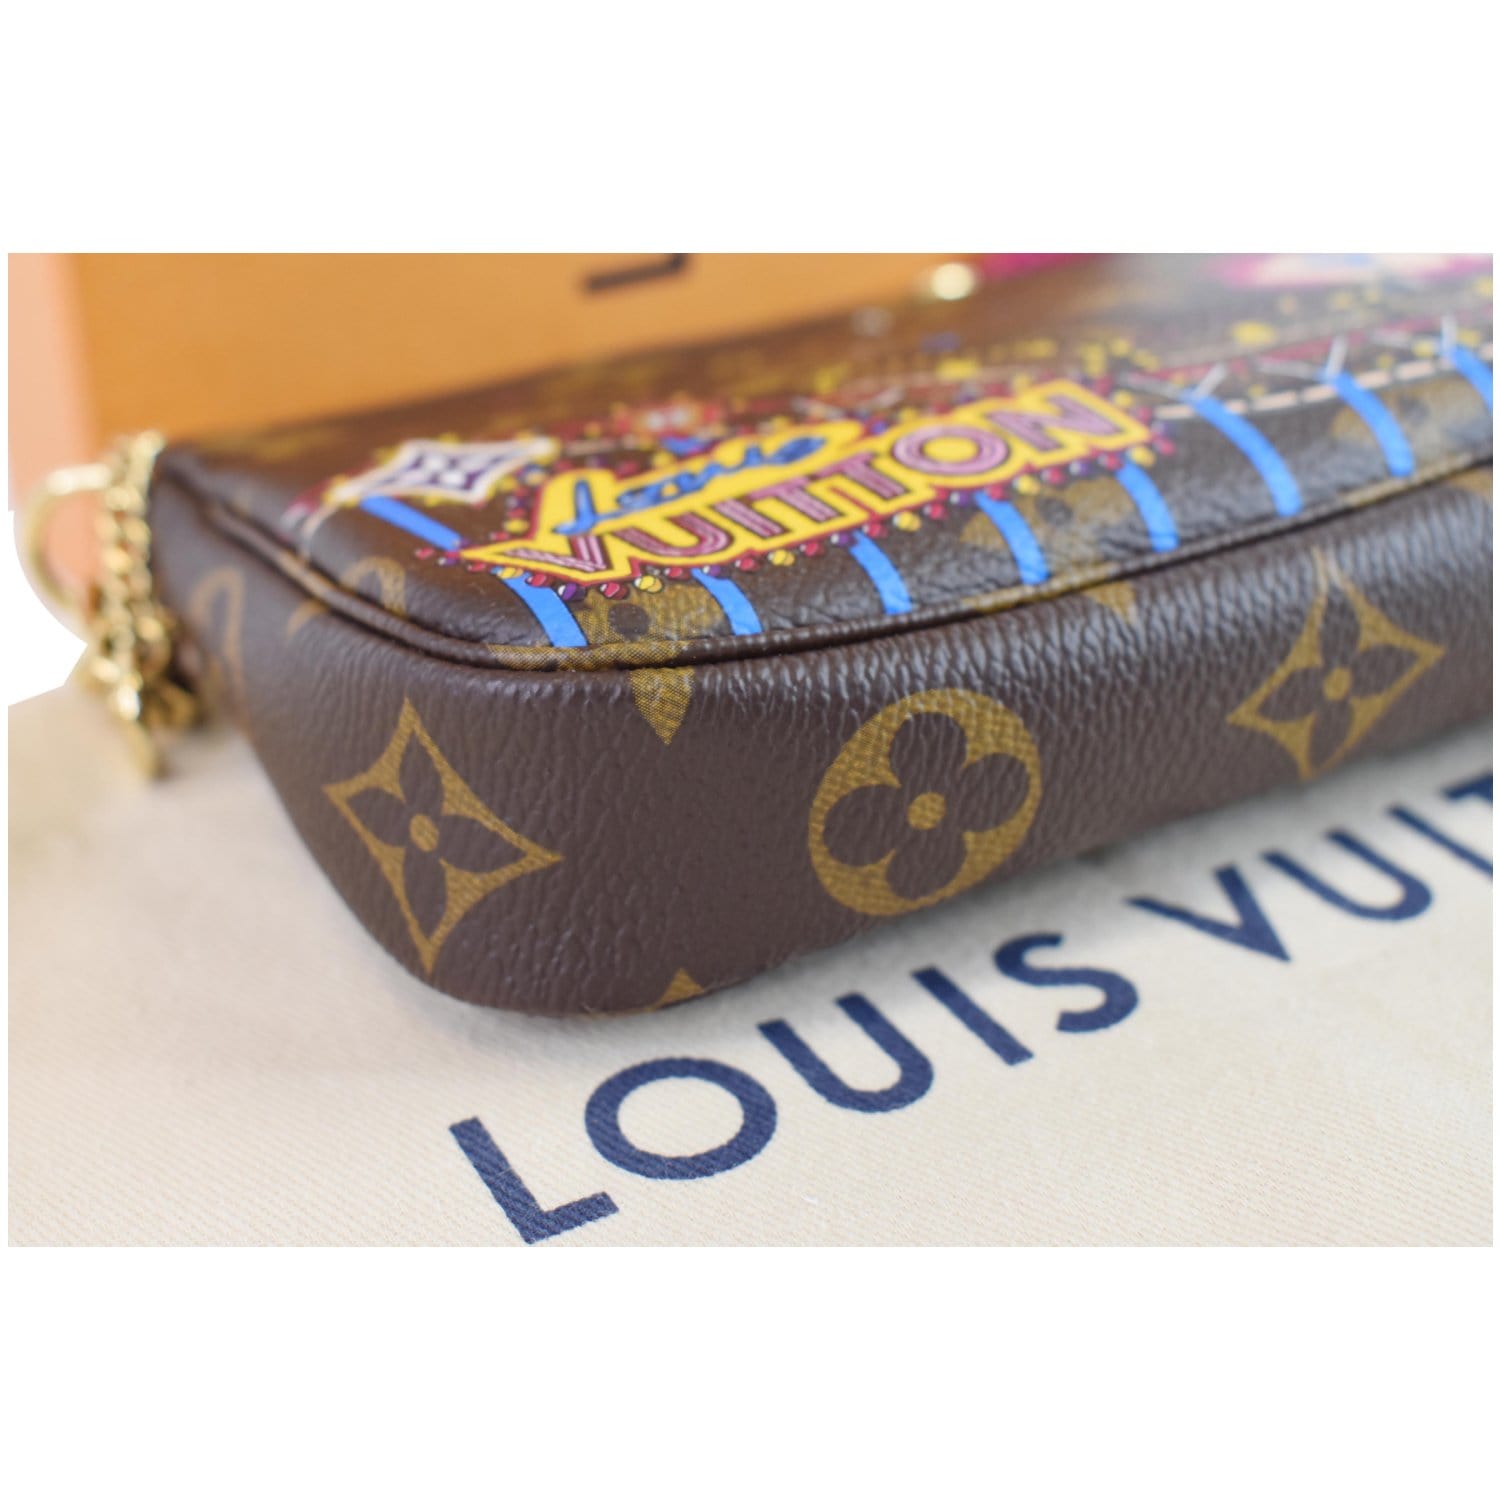 Louis Vuitton Mini Pochette Accessories⁣ Monogram Christmas – Coco Approved  Studio